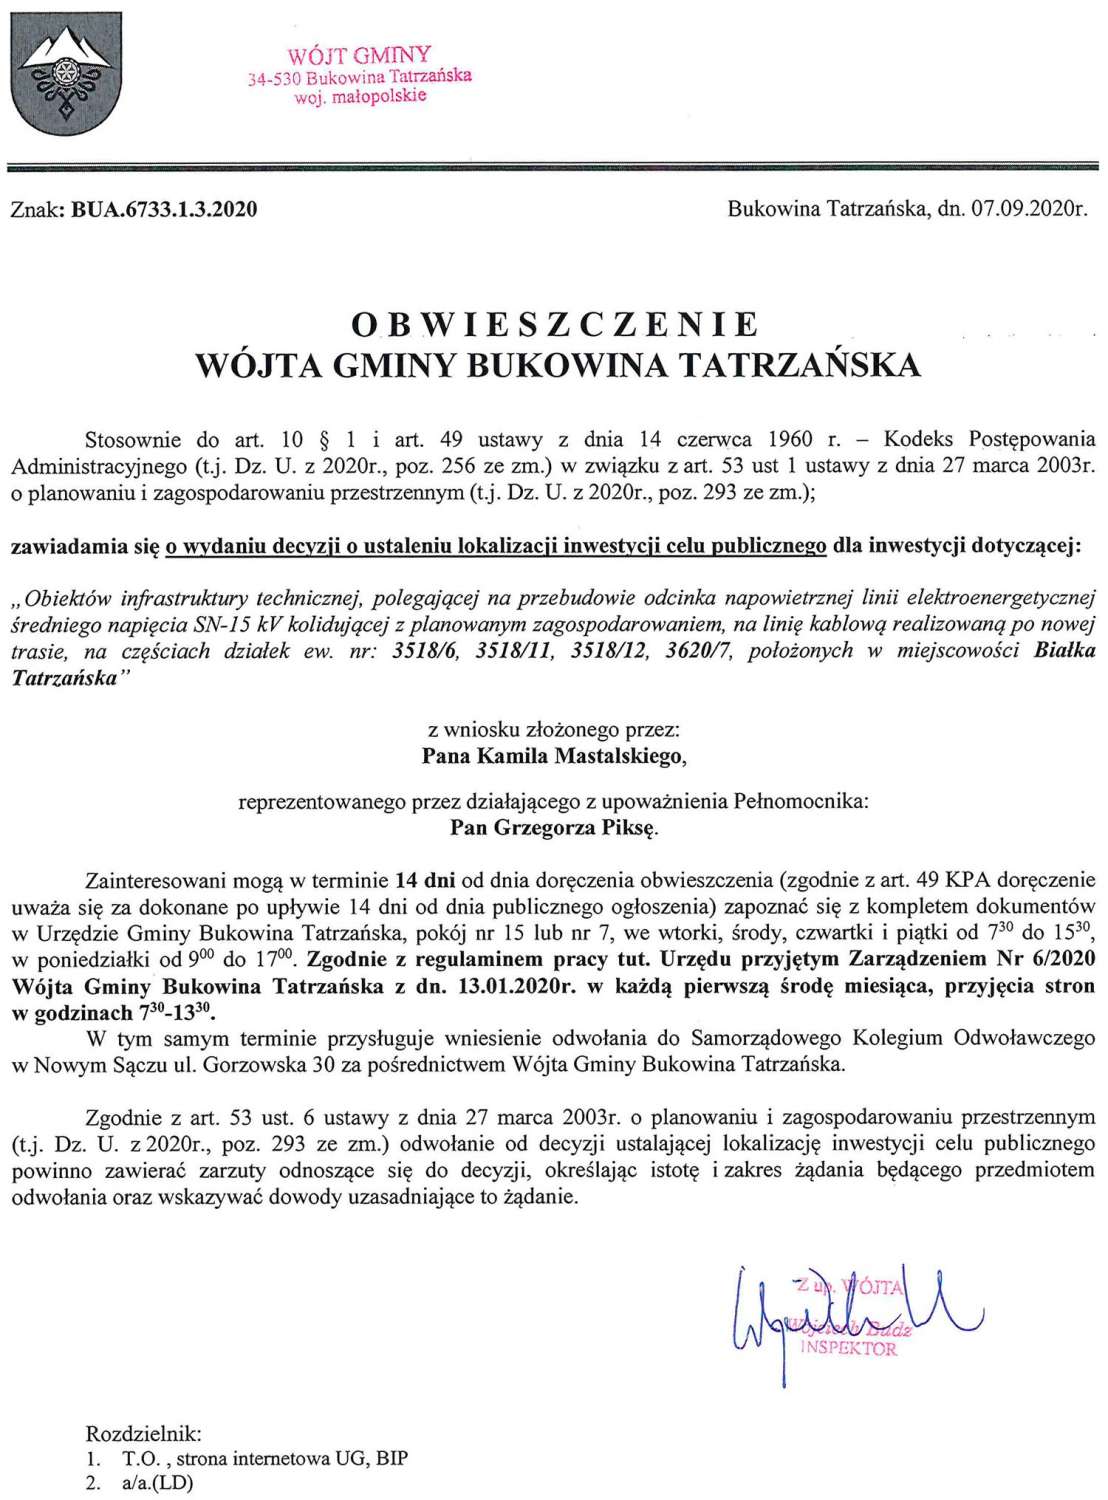 Obwieszczenie Wójta Gminy Bukowina Tatrzańska BUA 6733.1.3.2020